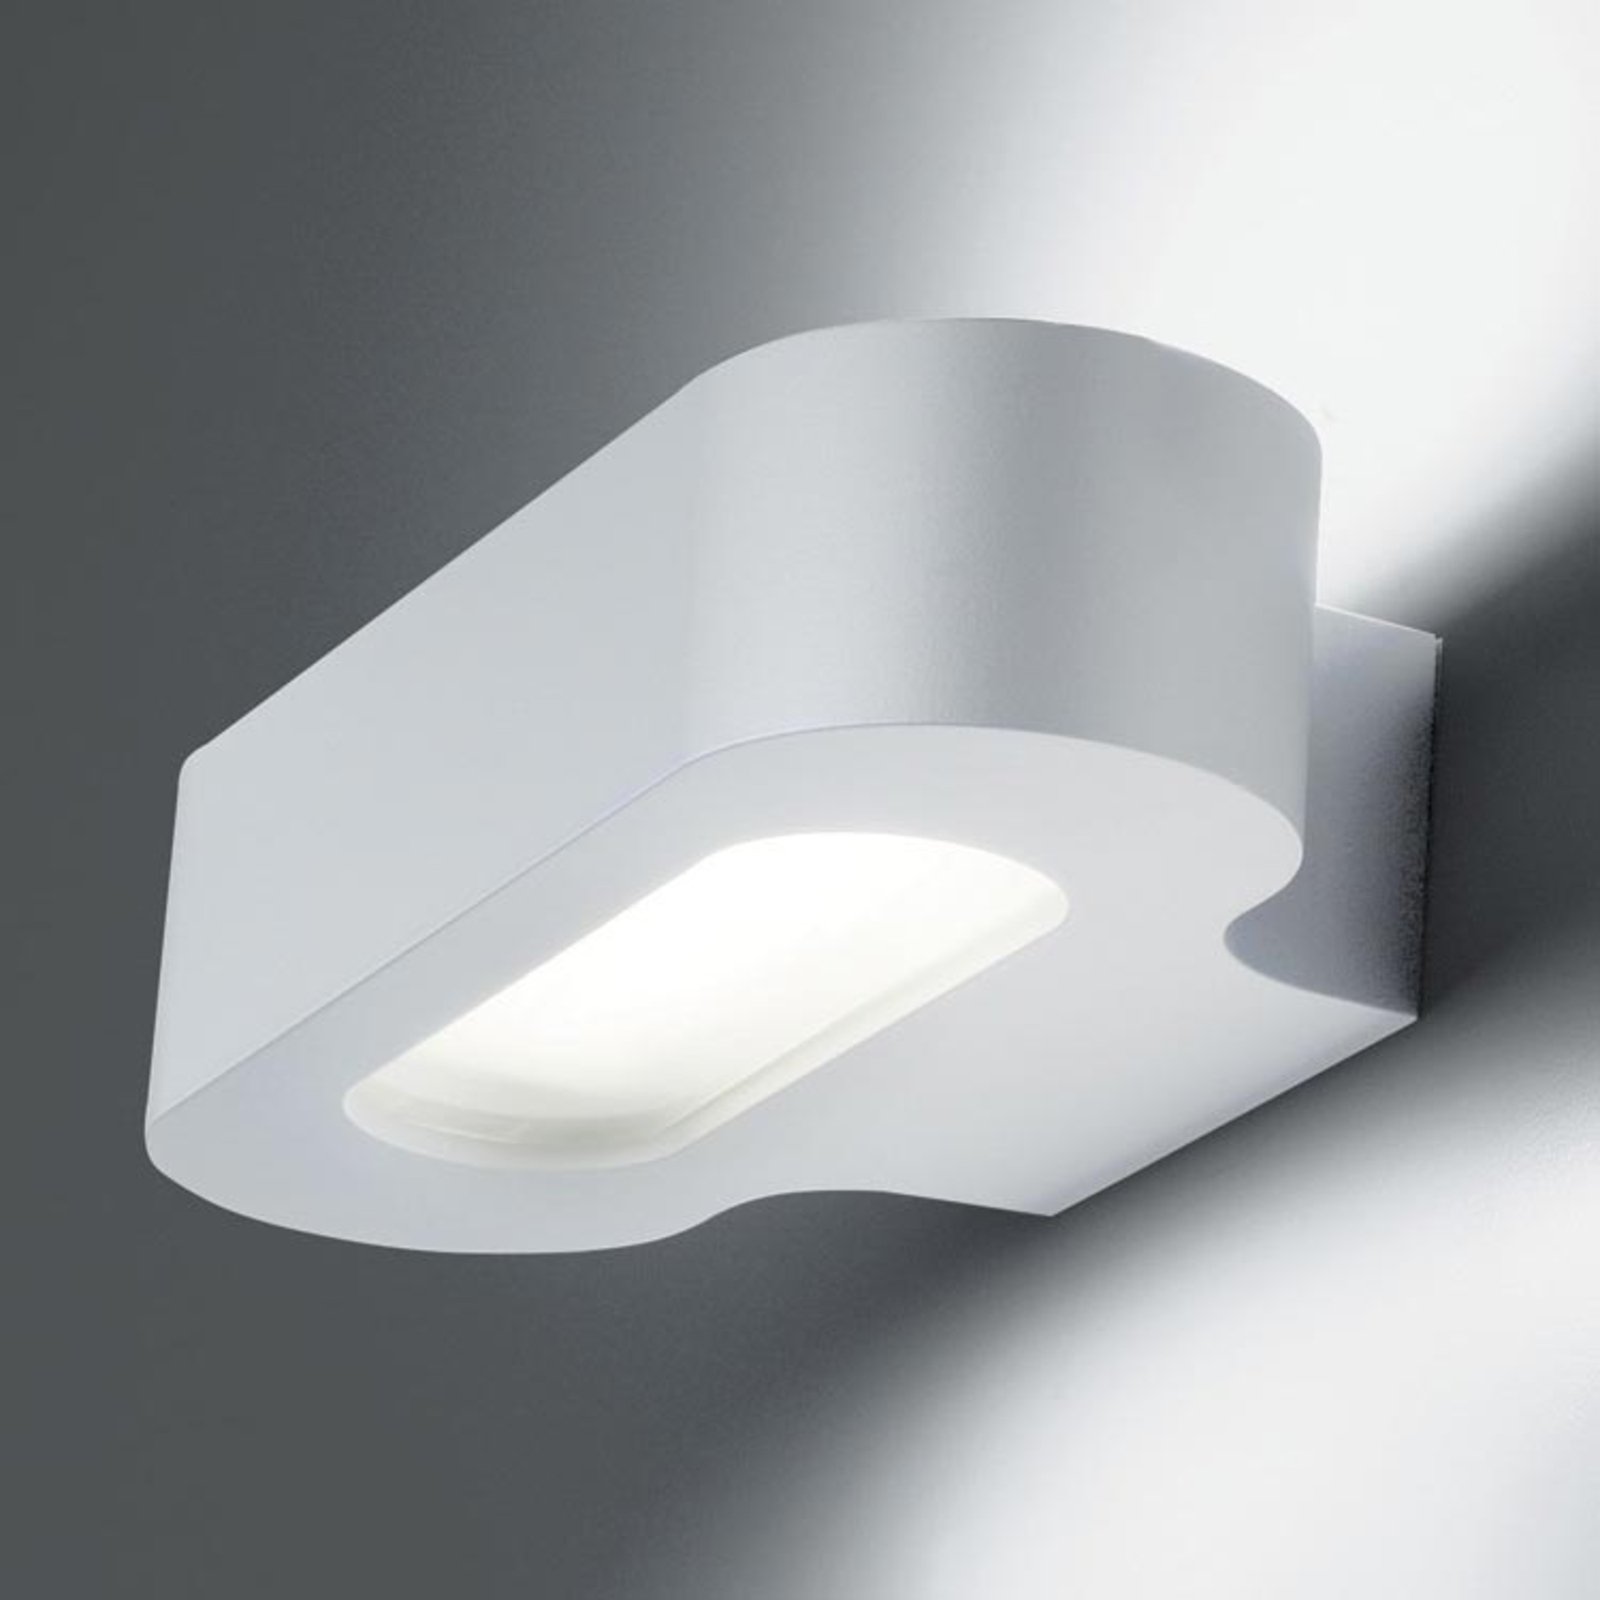 Artemide Talo designer wall light R7s 21 cm white